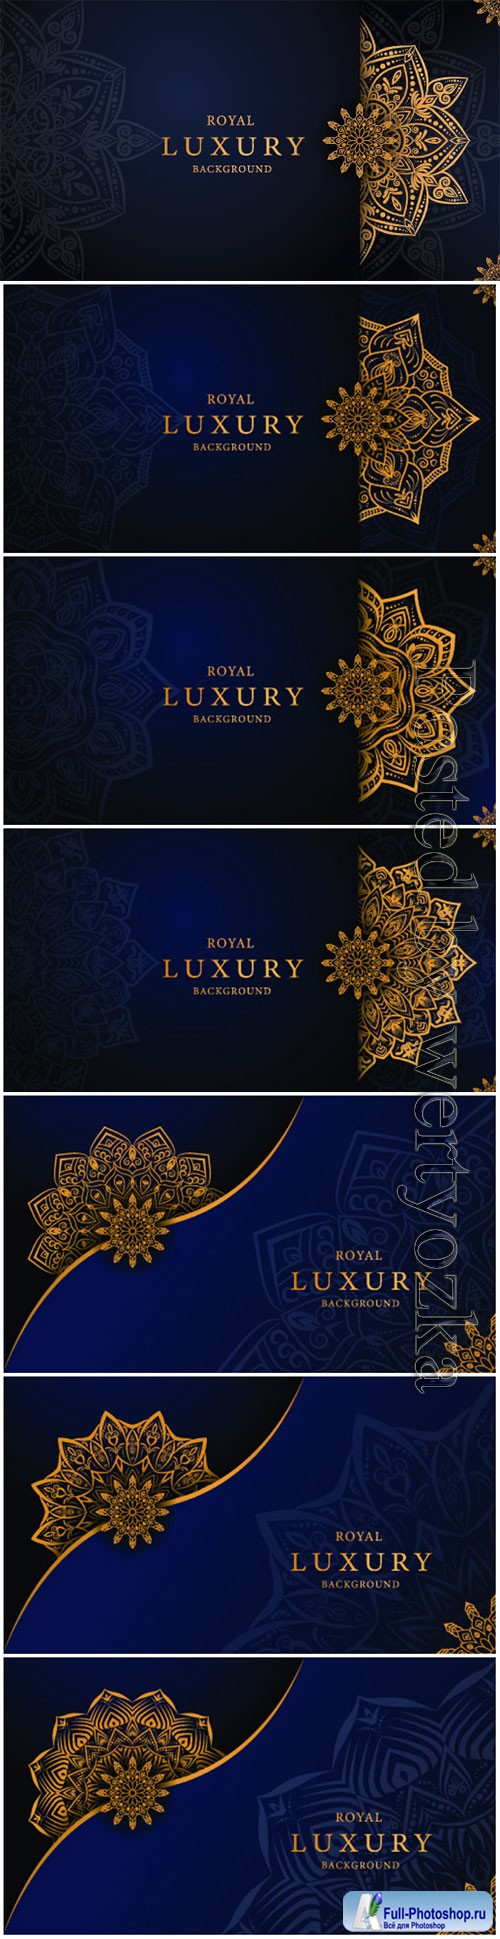 Luxury decorative mandala vector background # 4